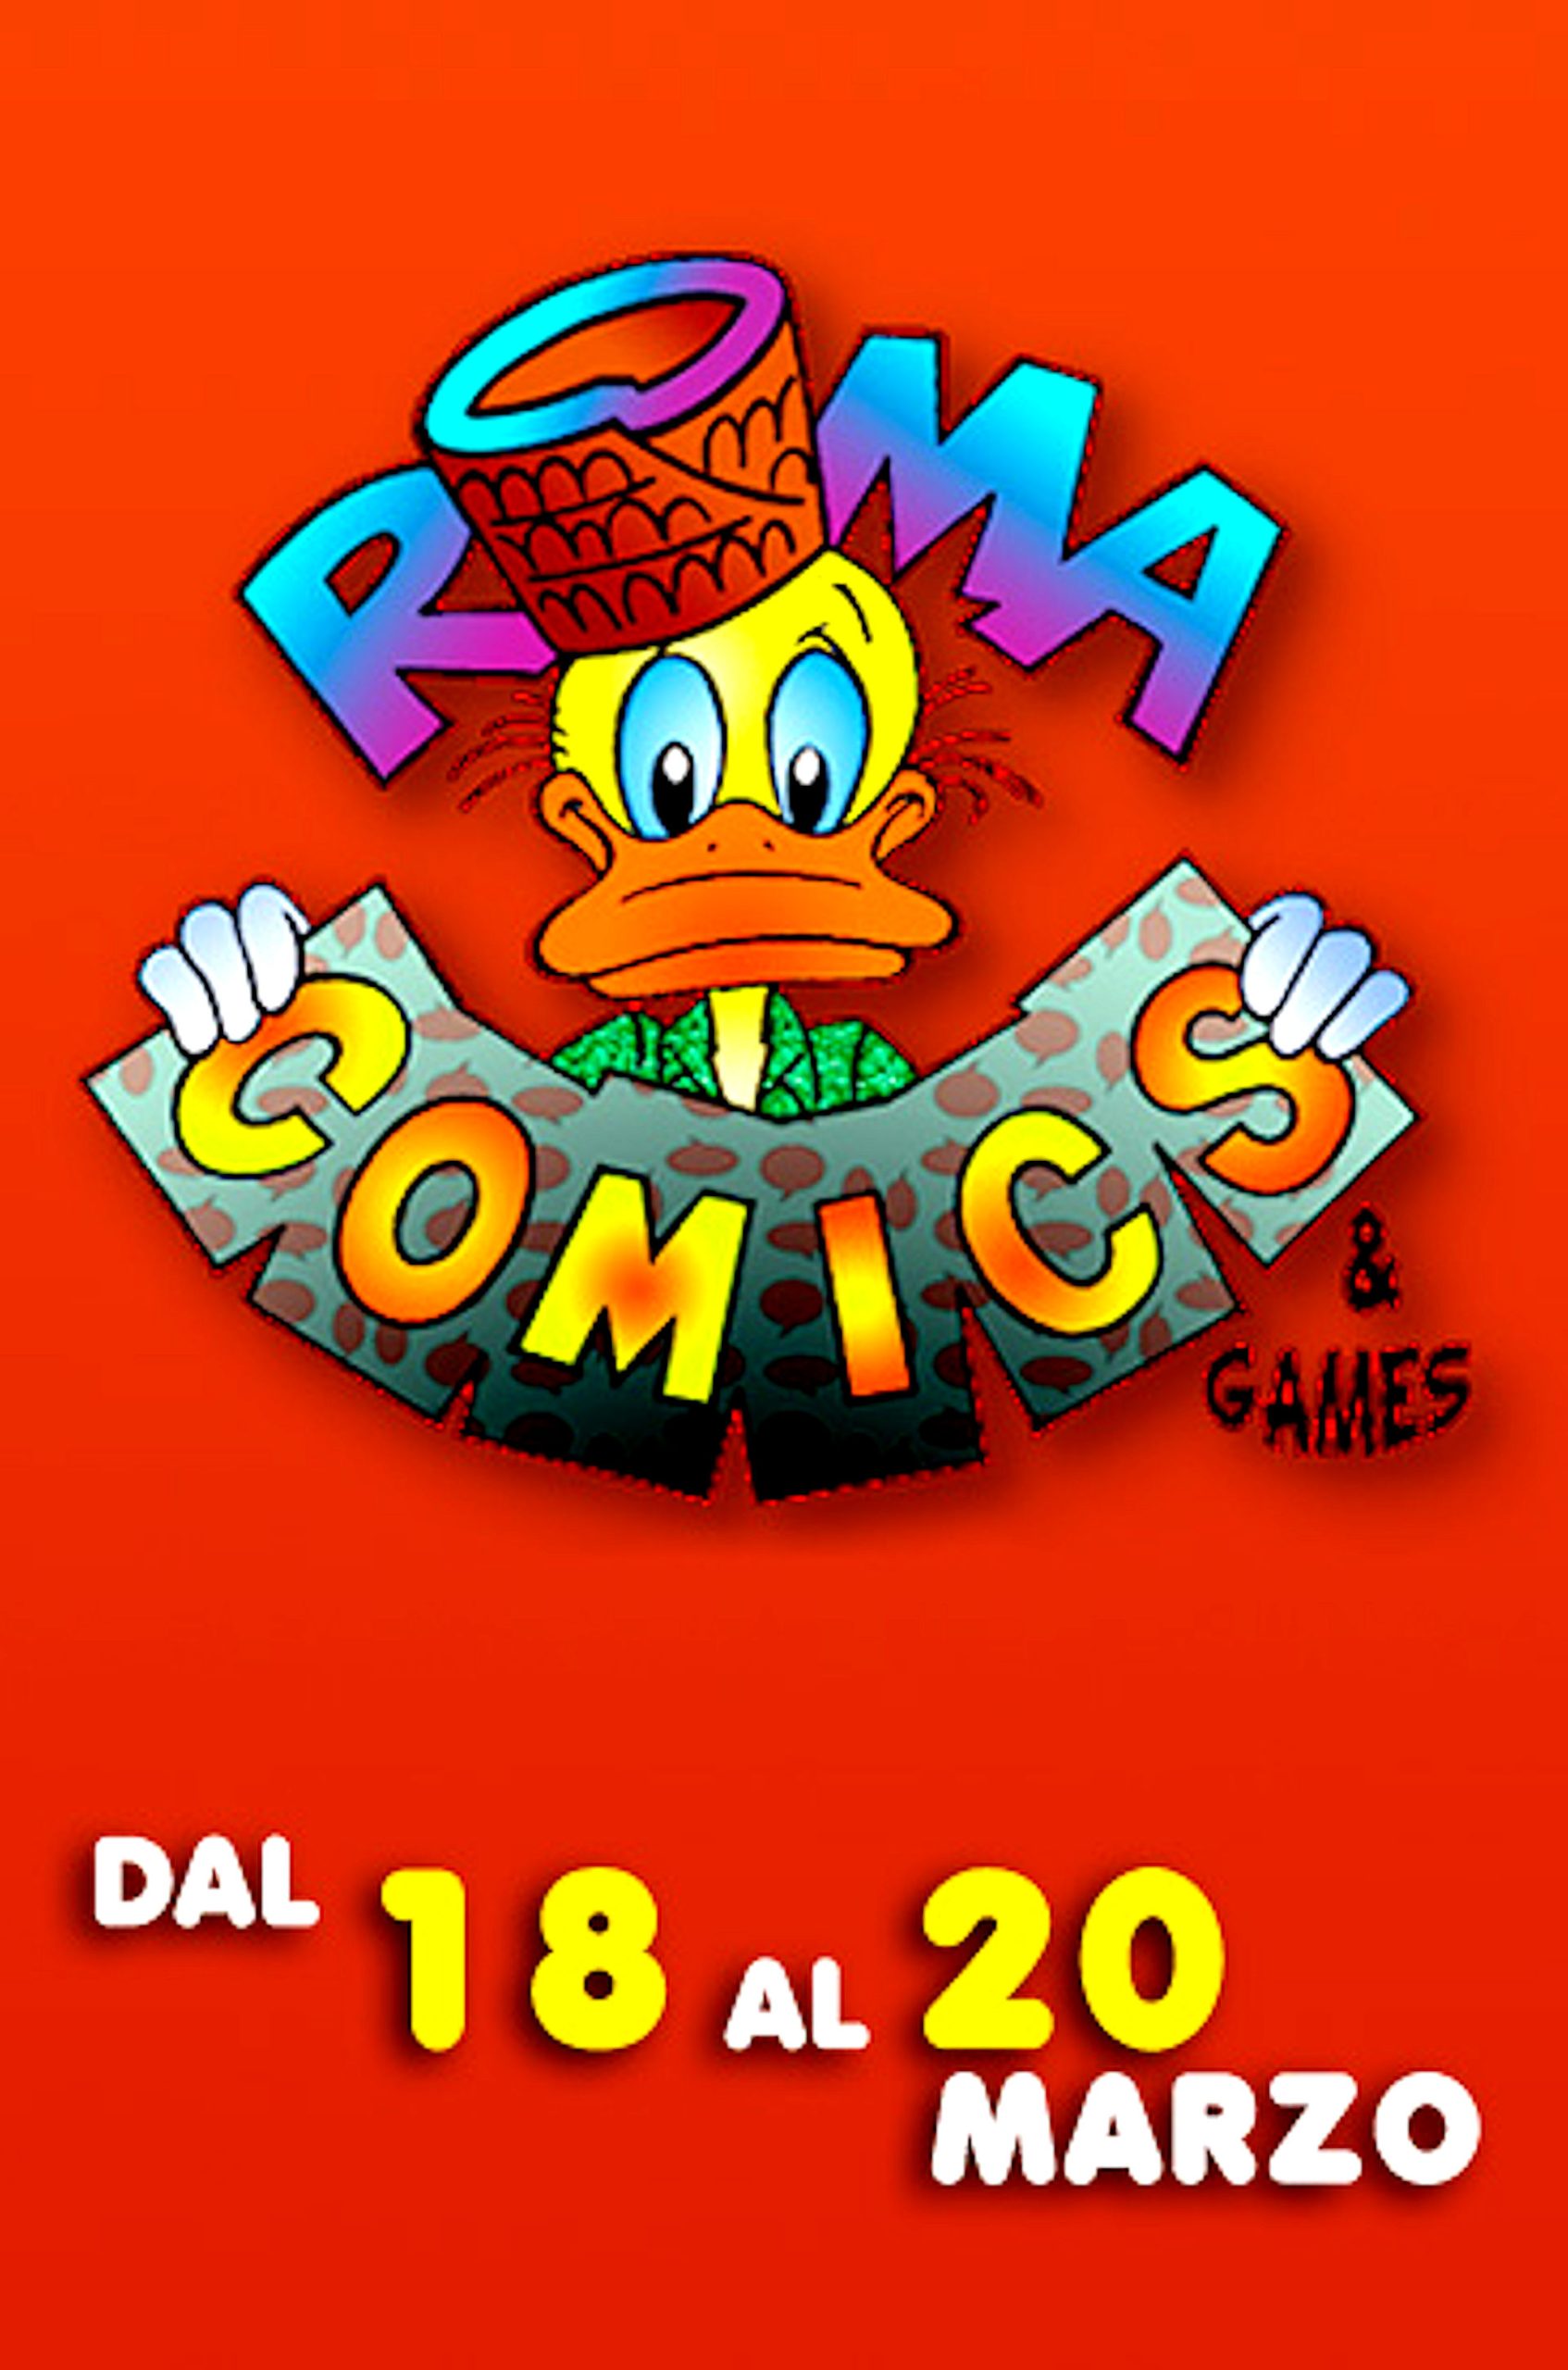 Romacomics & Games 2011